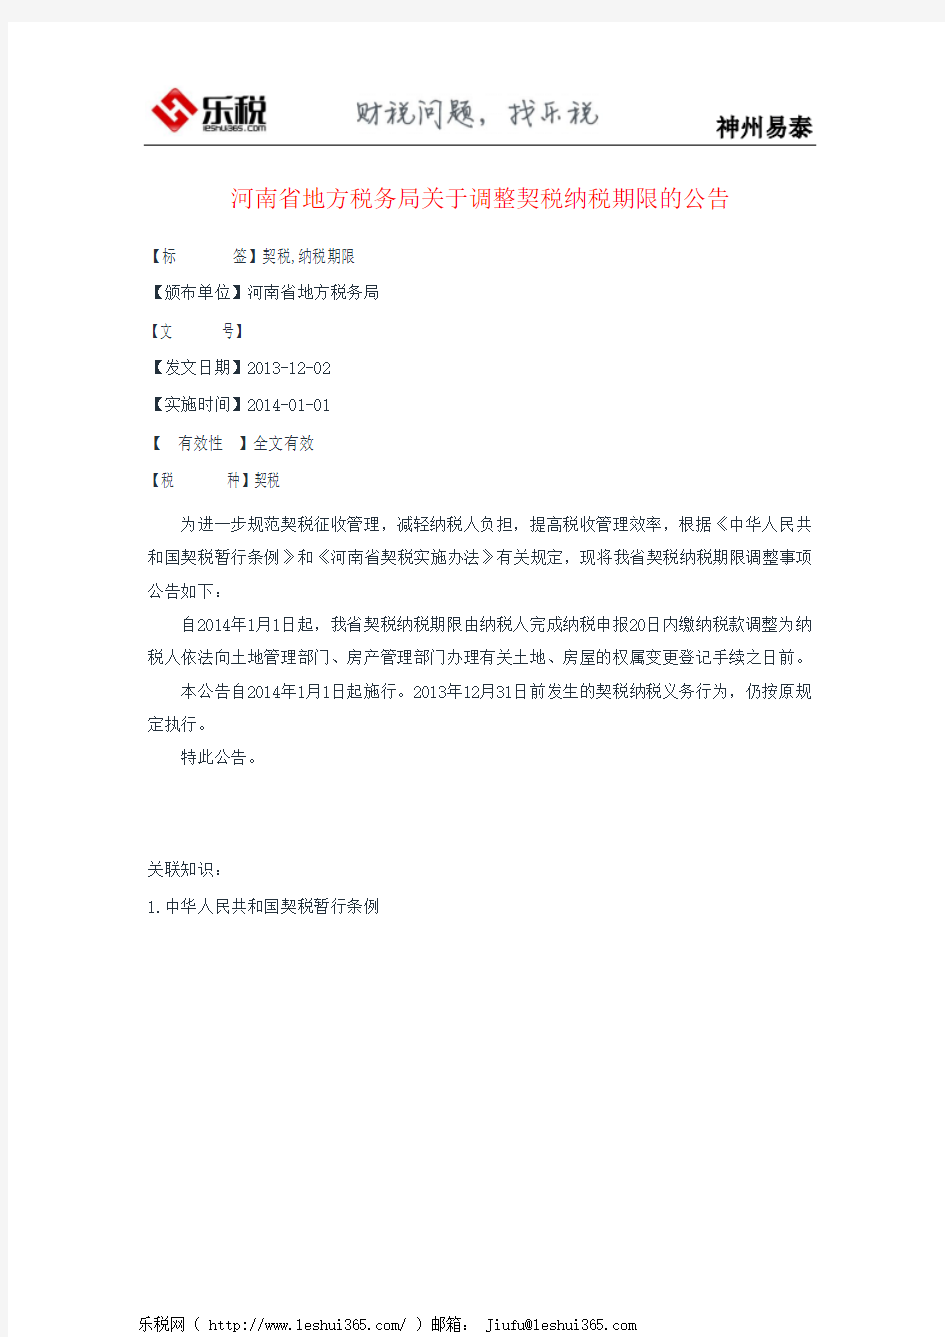 河南省地方税务局关于调整契税纳税期限的公告